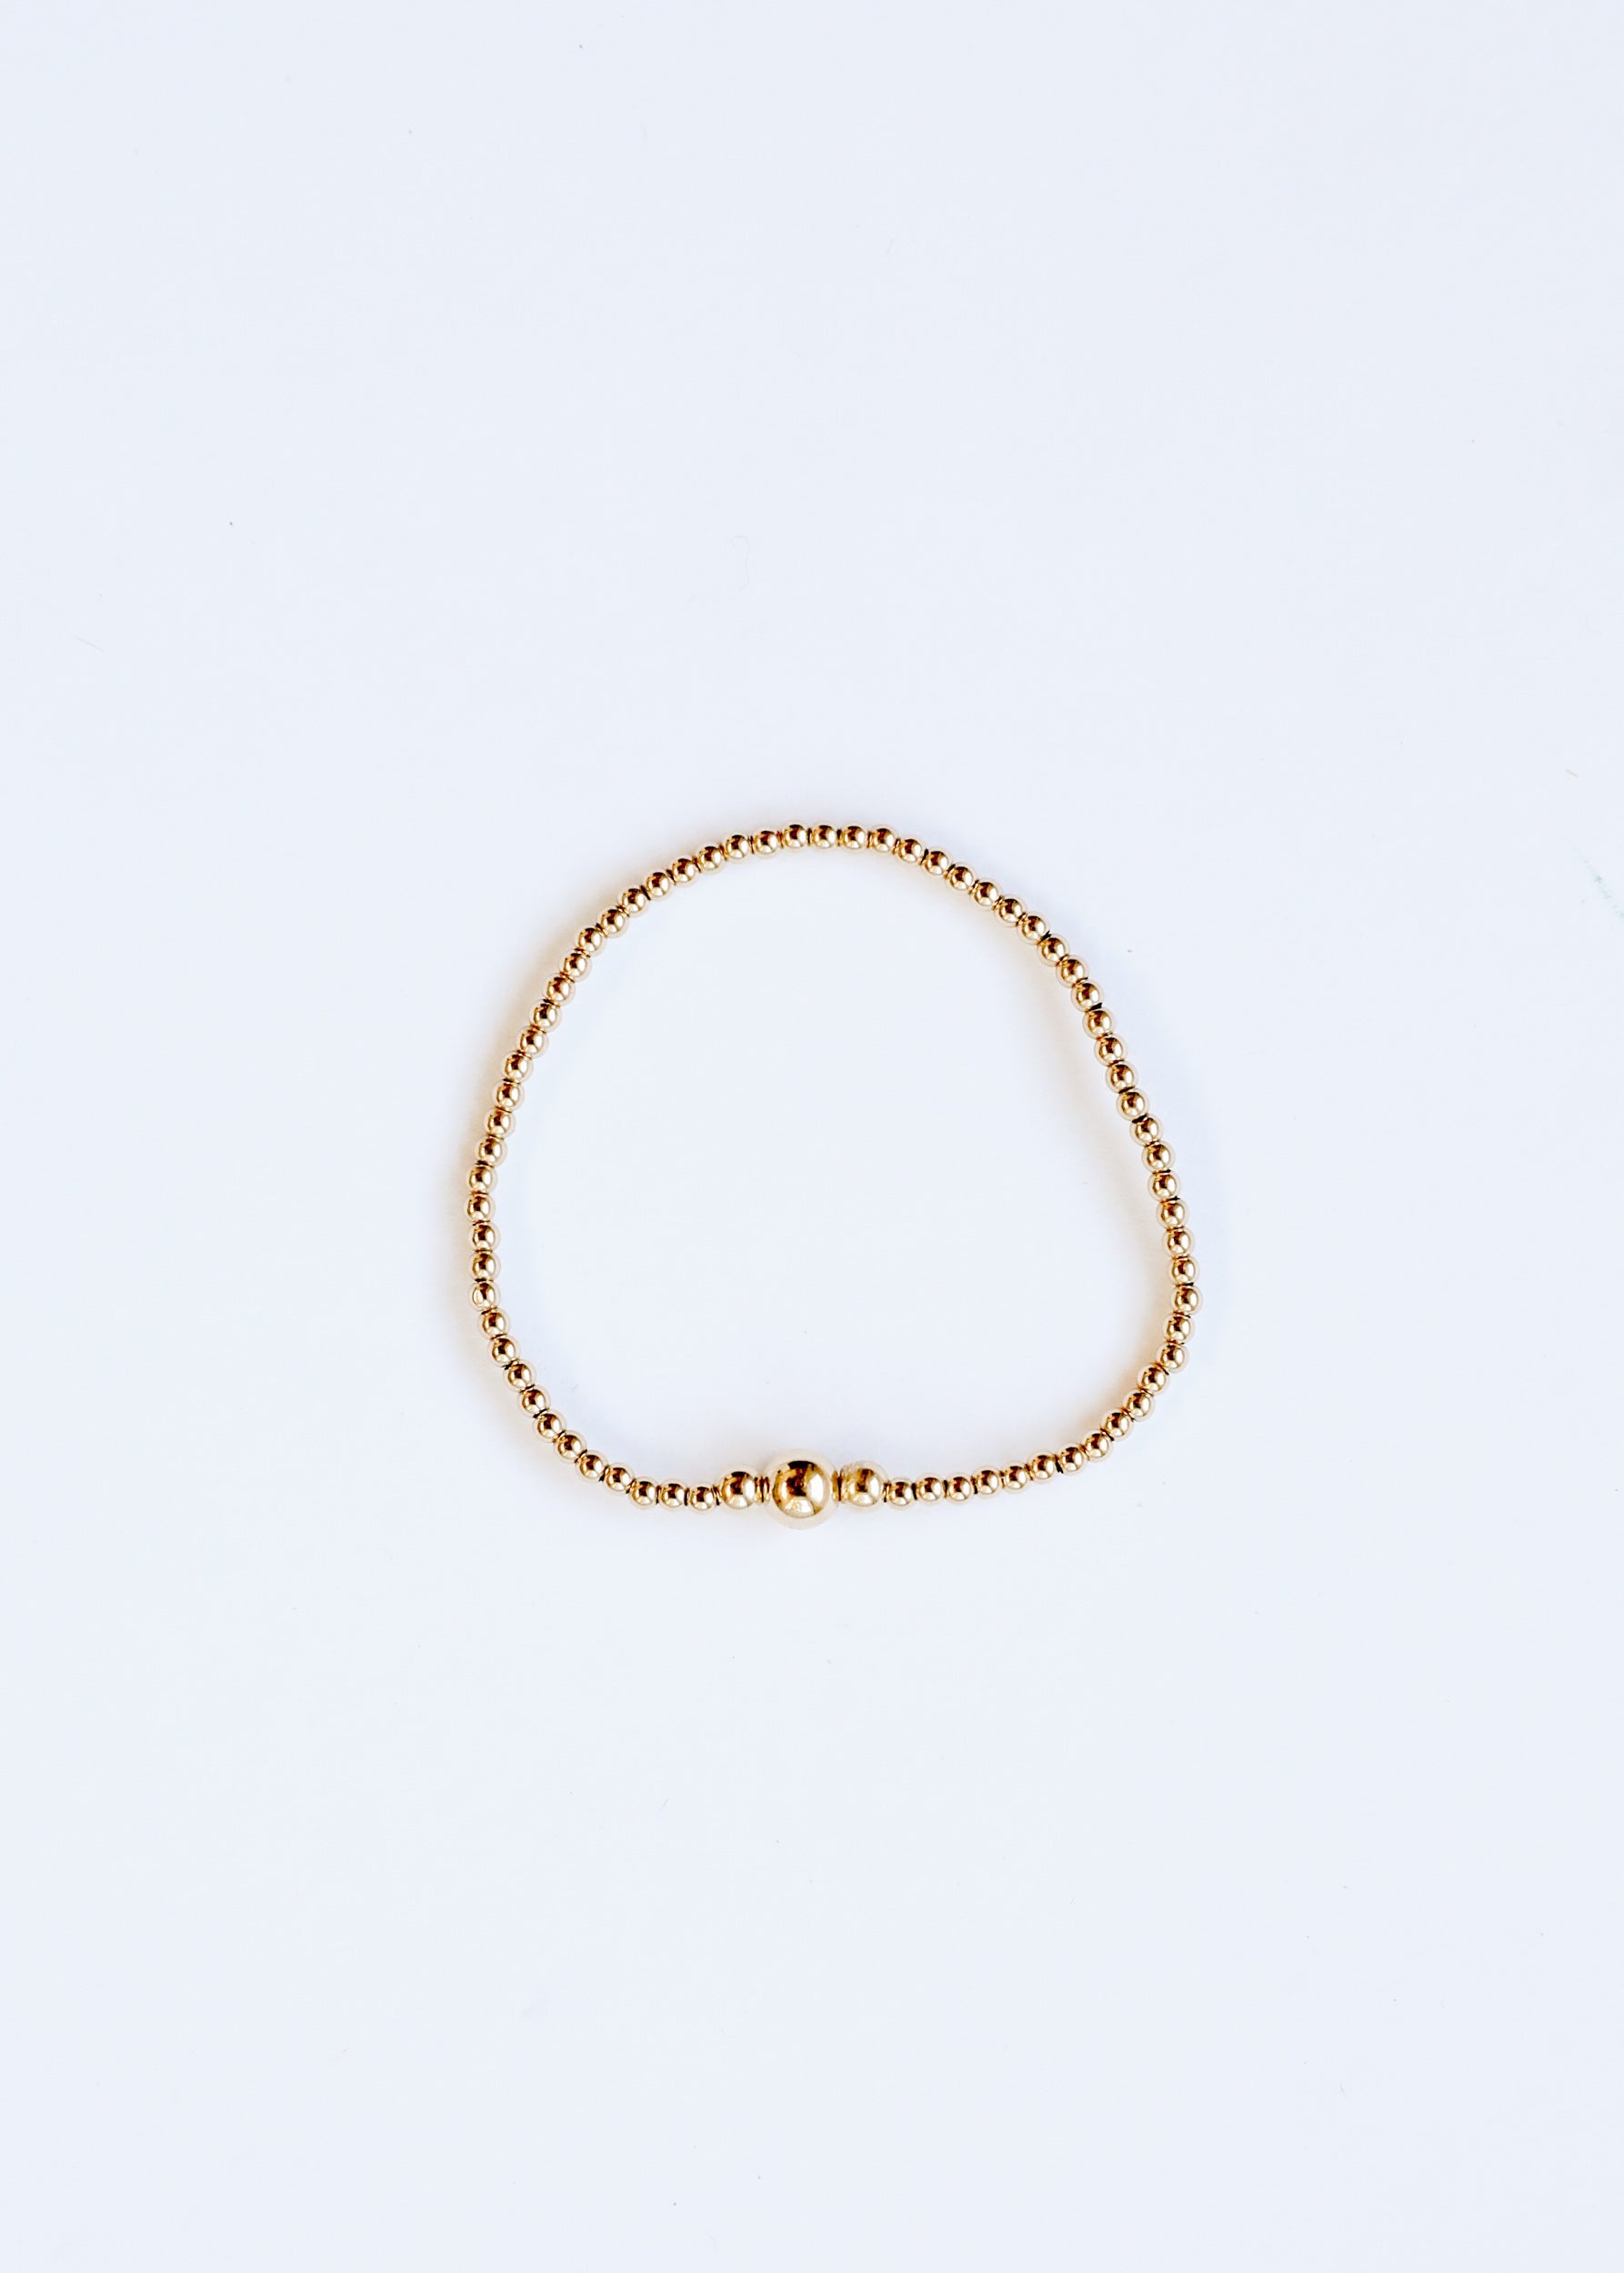 Tiny Gold || Adult Anklet or Bracelet